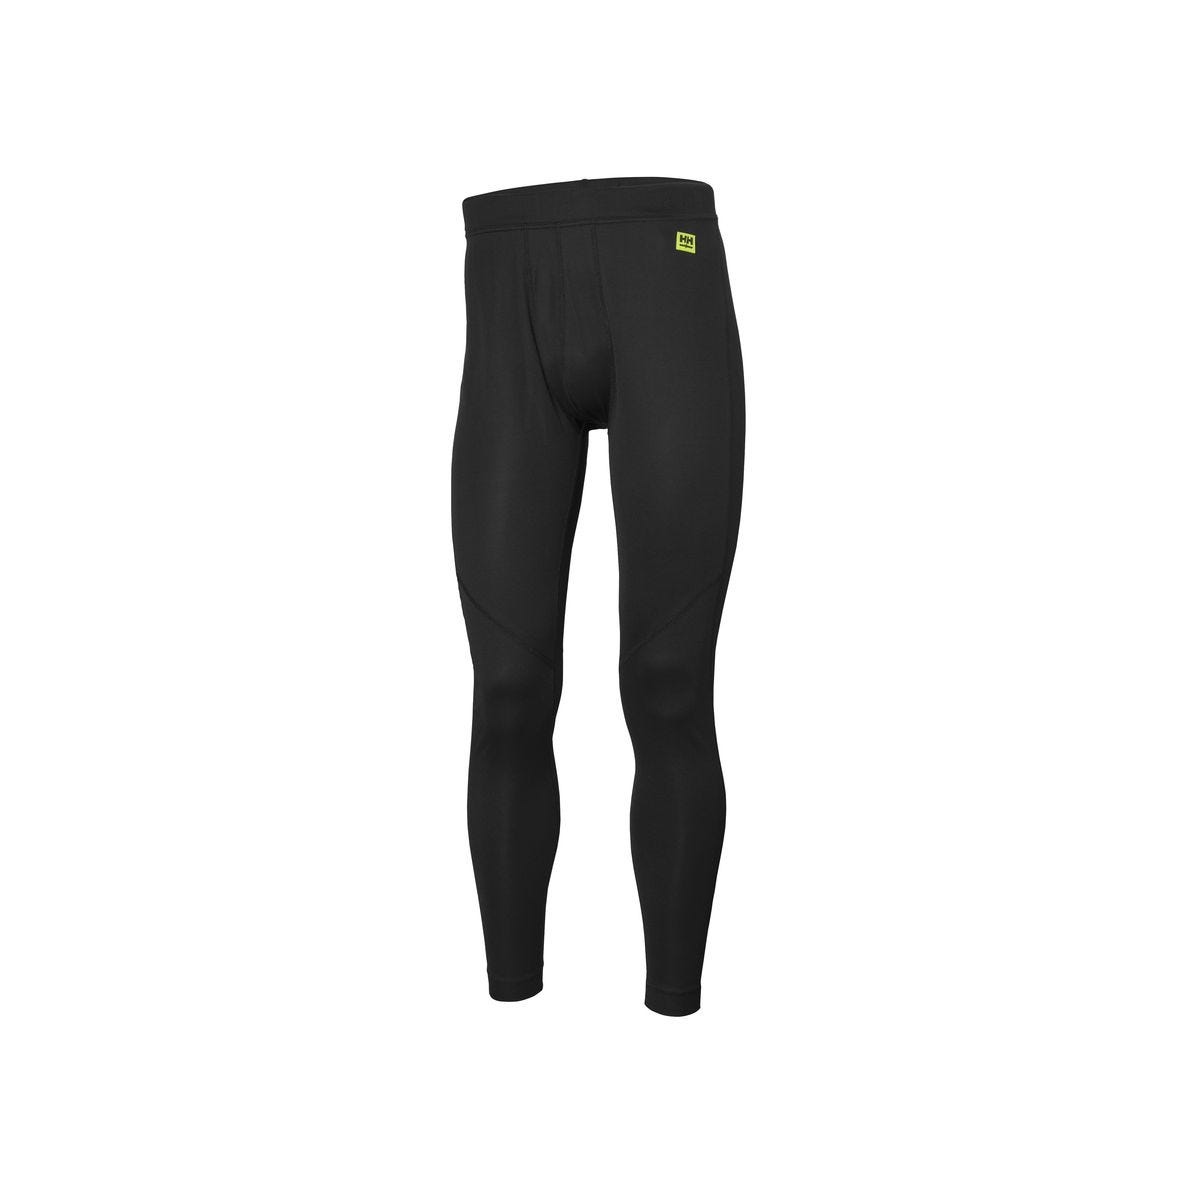 Pantalon sous-vêtement technique Lifa Noir - Helly Hansen - Taille S 0